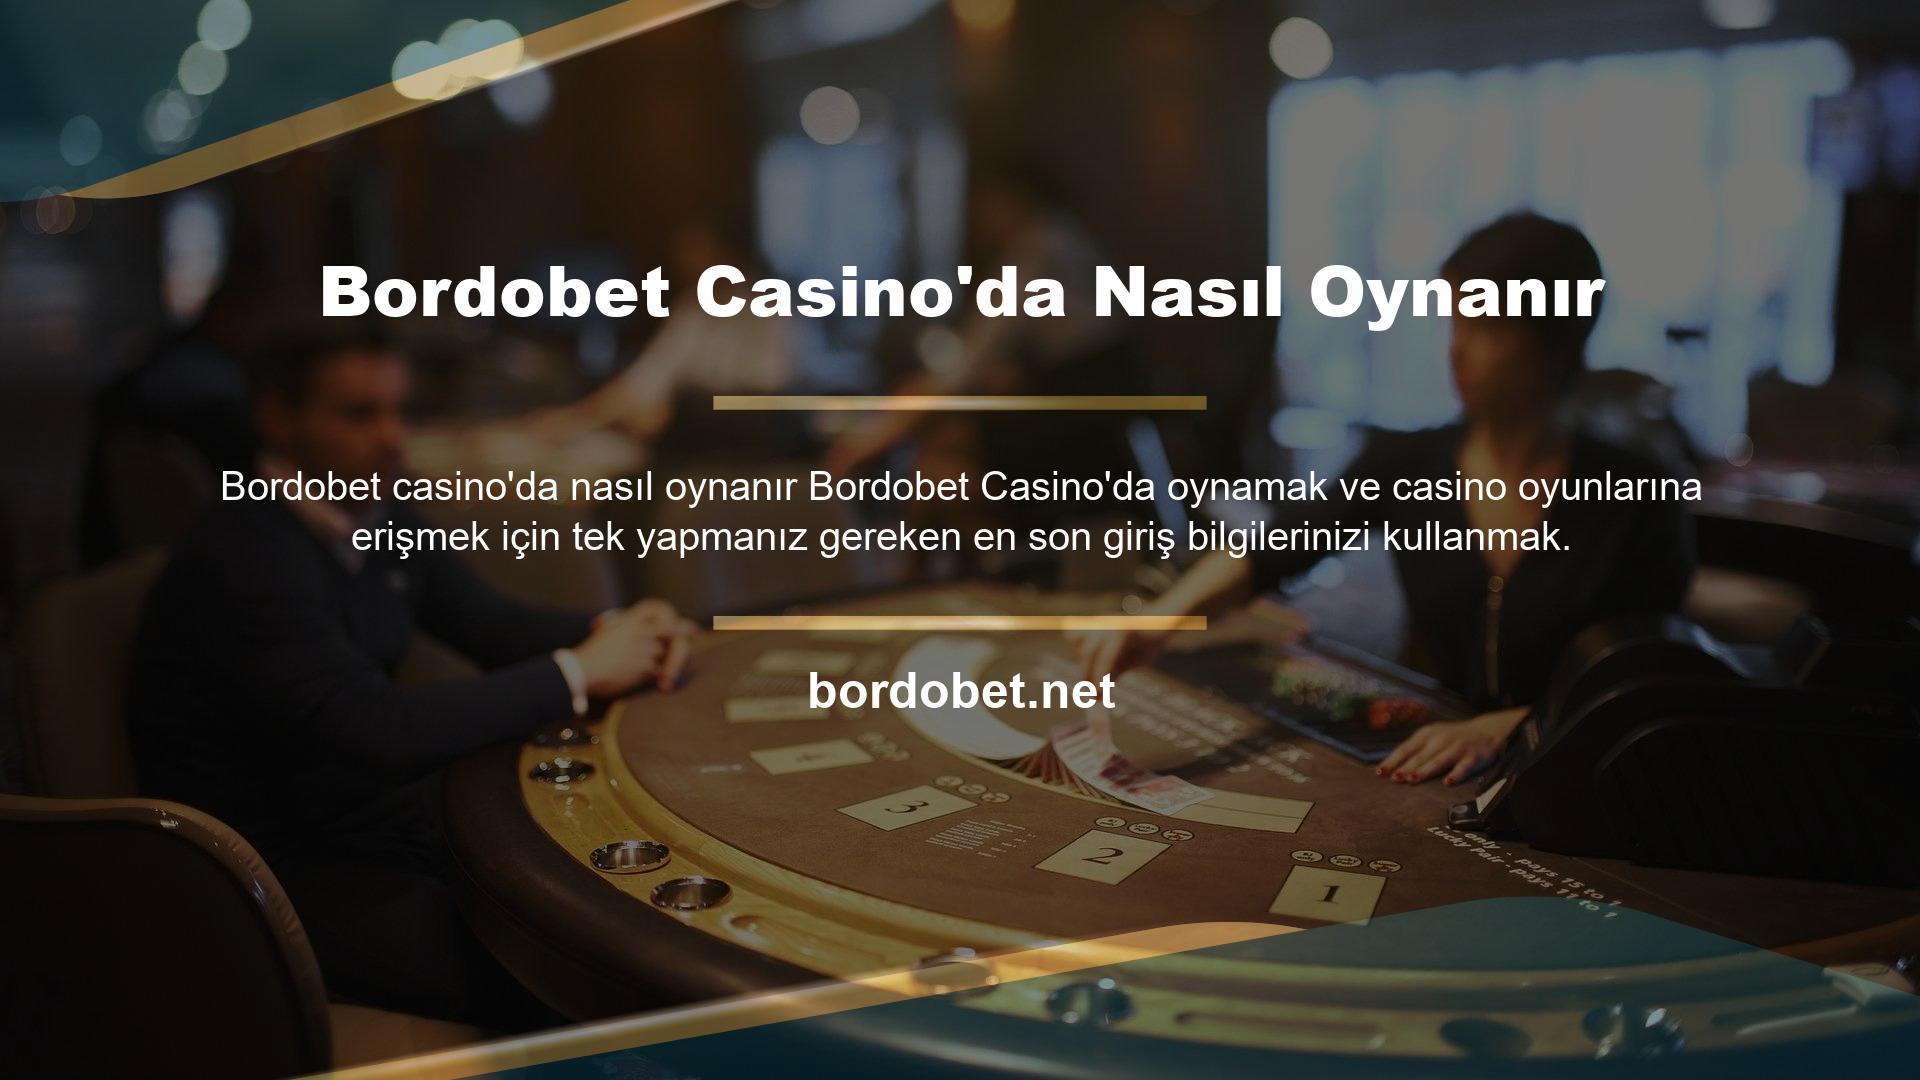 Bordobet Casino'da Nasıl Oynanır